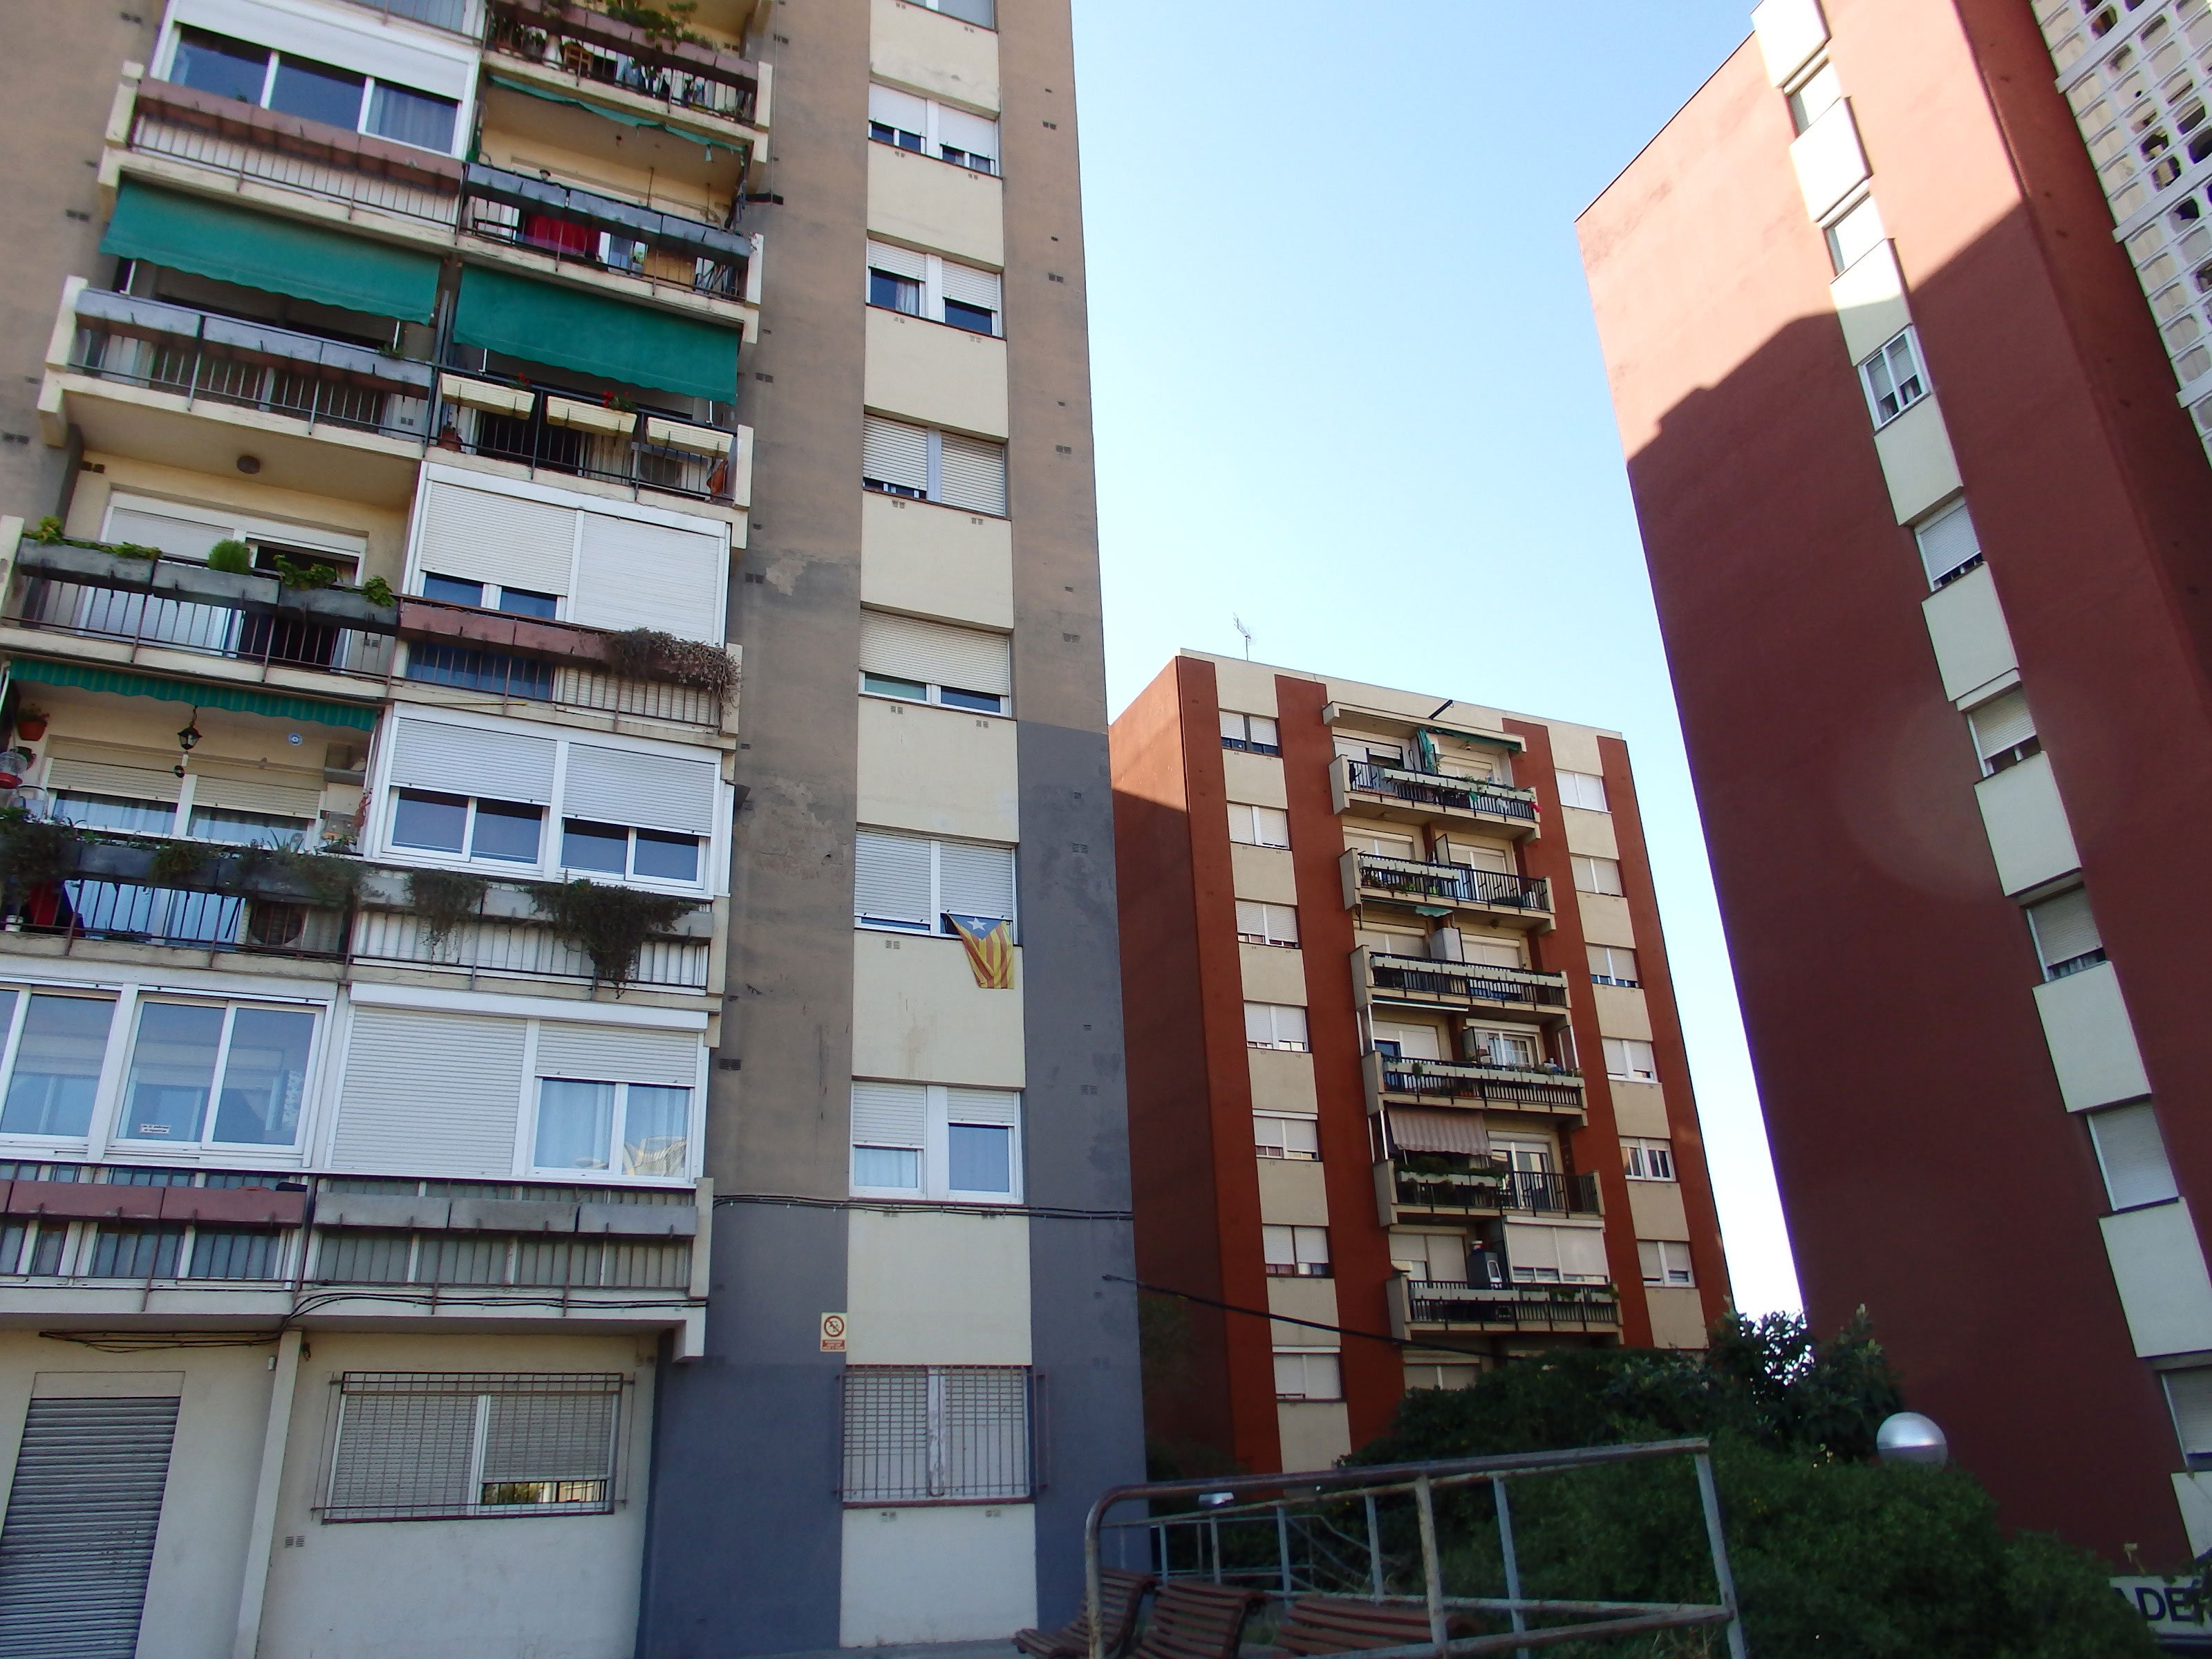 Bloques de pisos del distrito de Nou Barris / DB